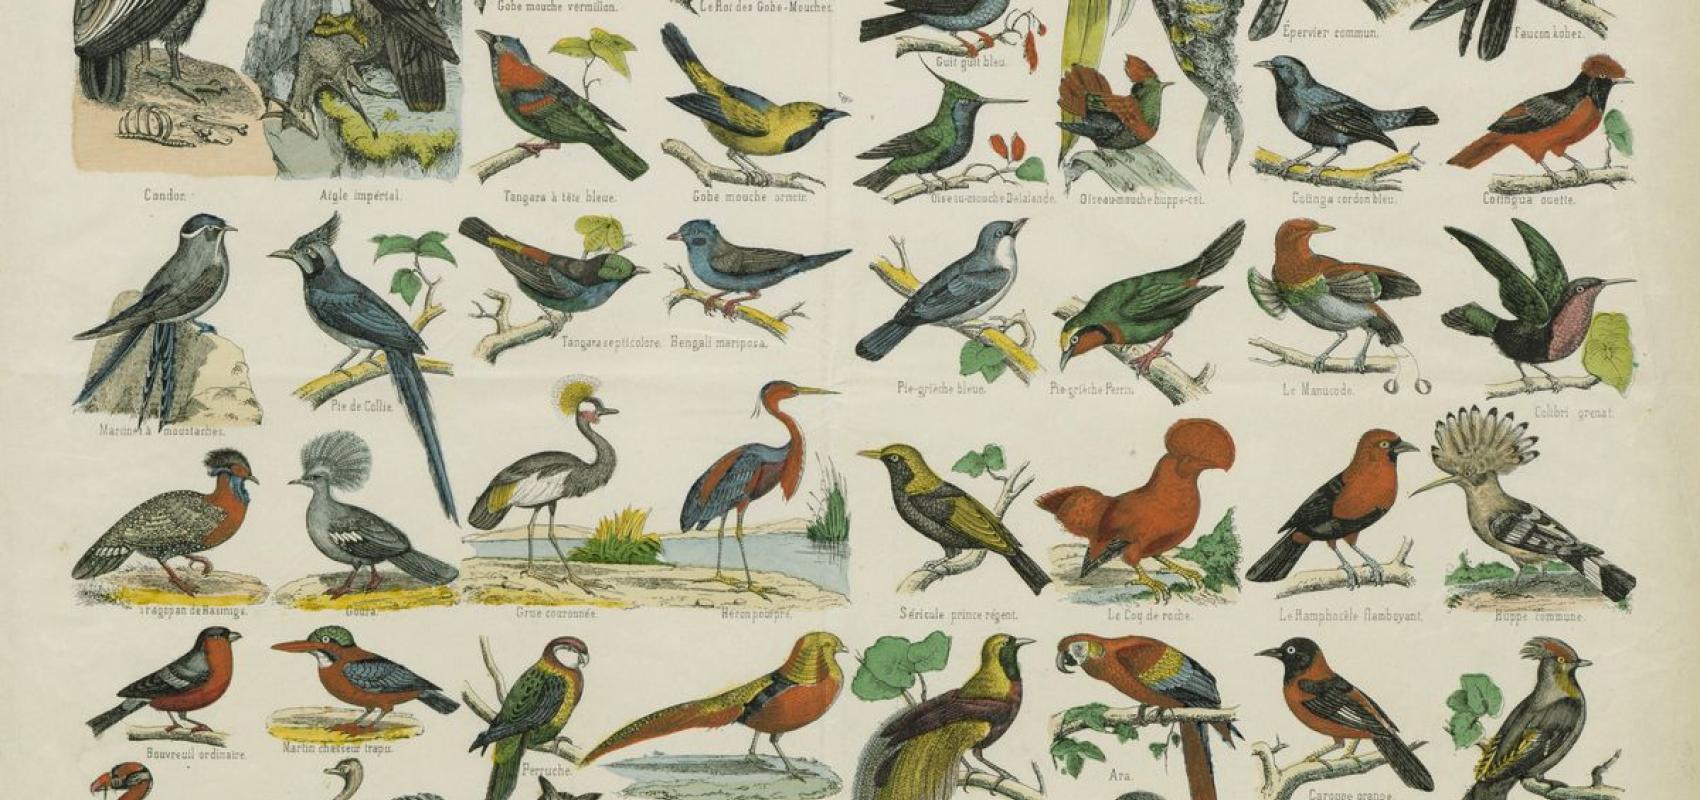 Histoire naturelle, Oiseaux, estampe extraite du « Recueil. Images d'Epinal de la Maison Pellerin », 1857. BnF, département Estampes et photographie -  - BnF